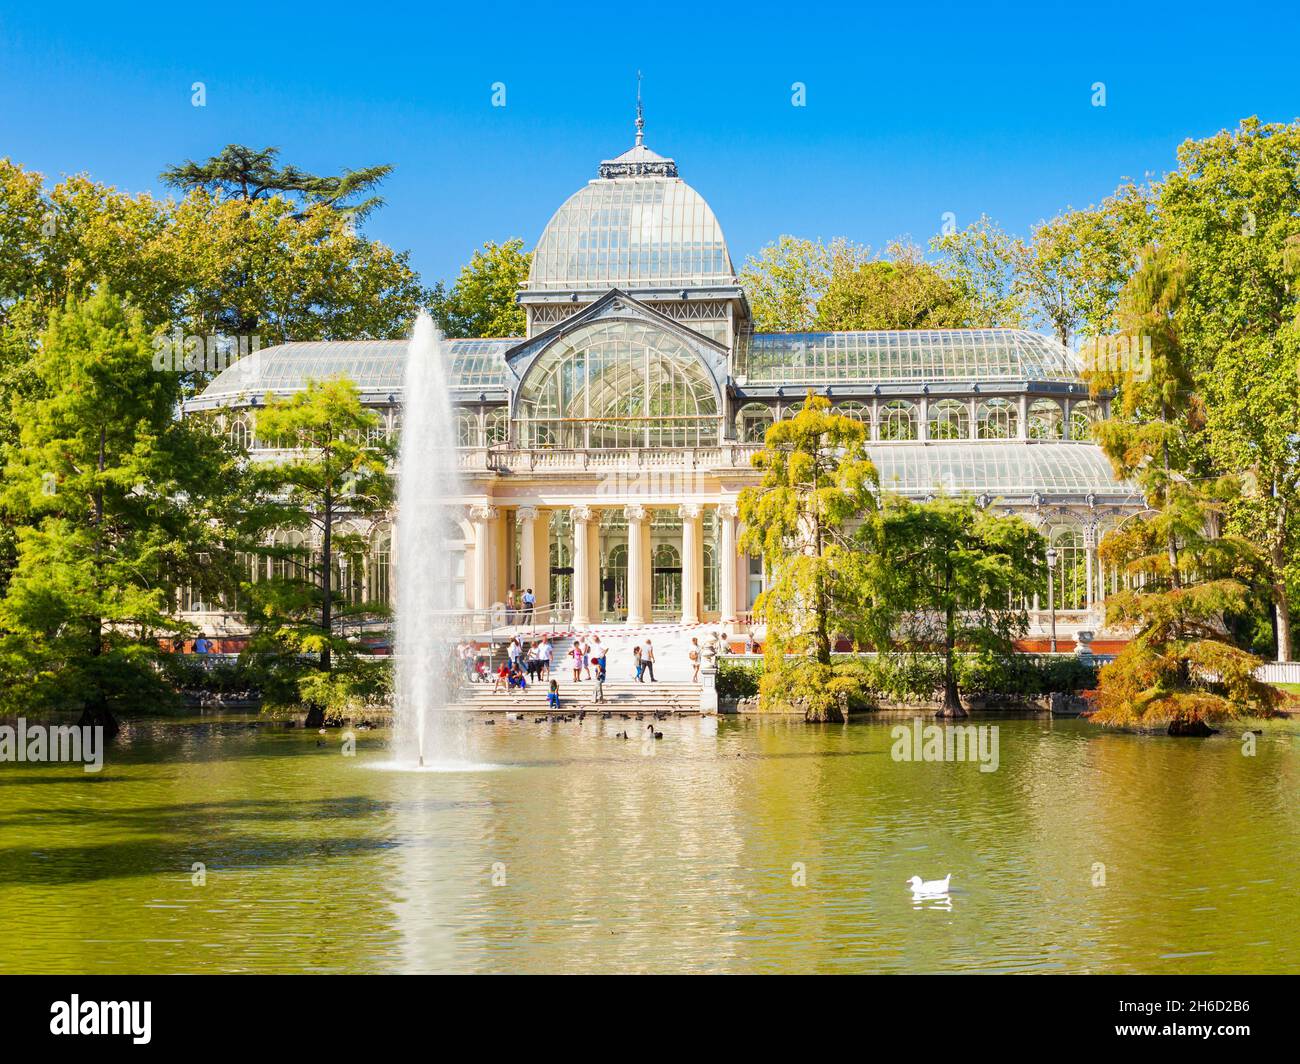 Il palazzo di cristallo o Palacio de Cristalis nel Buen Retiro Park, uno dei parchi più grandi della città di Madrid, Spagna. Madrid è la capitale della Spagna. Foto Stock